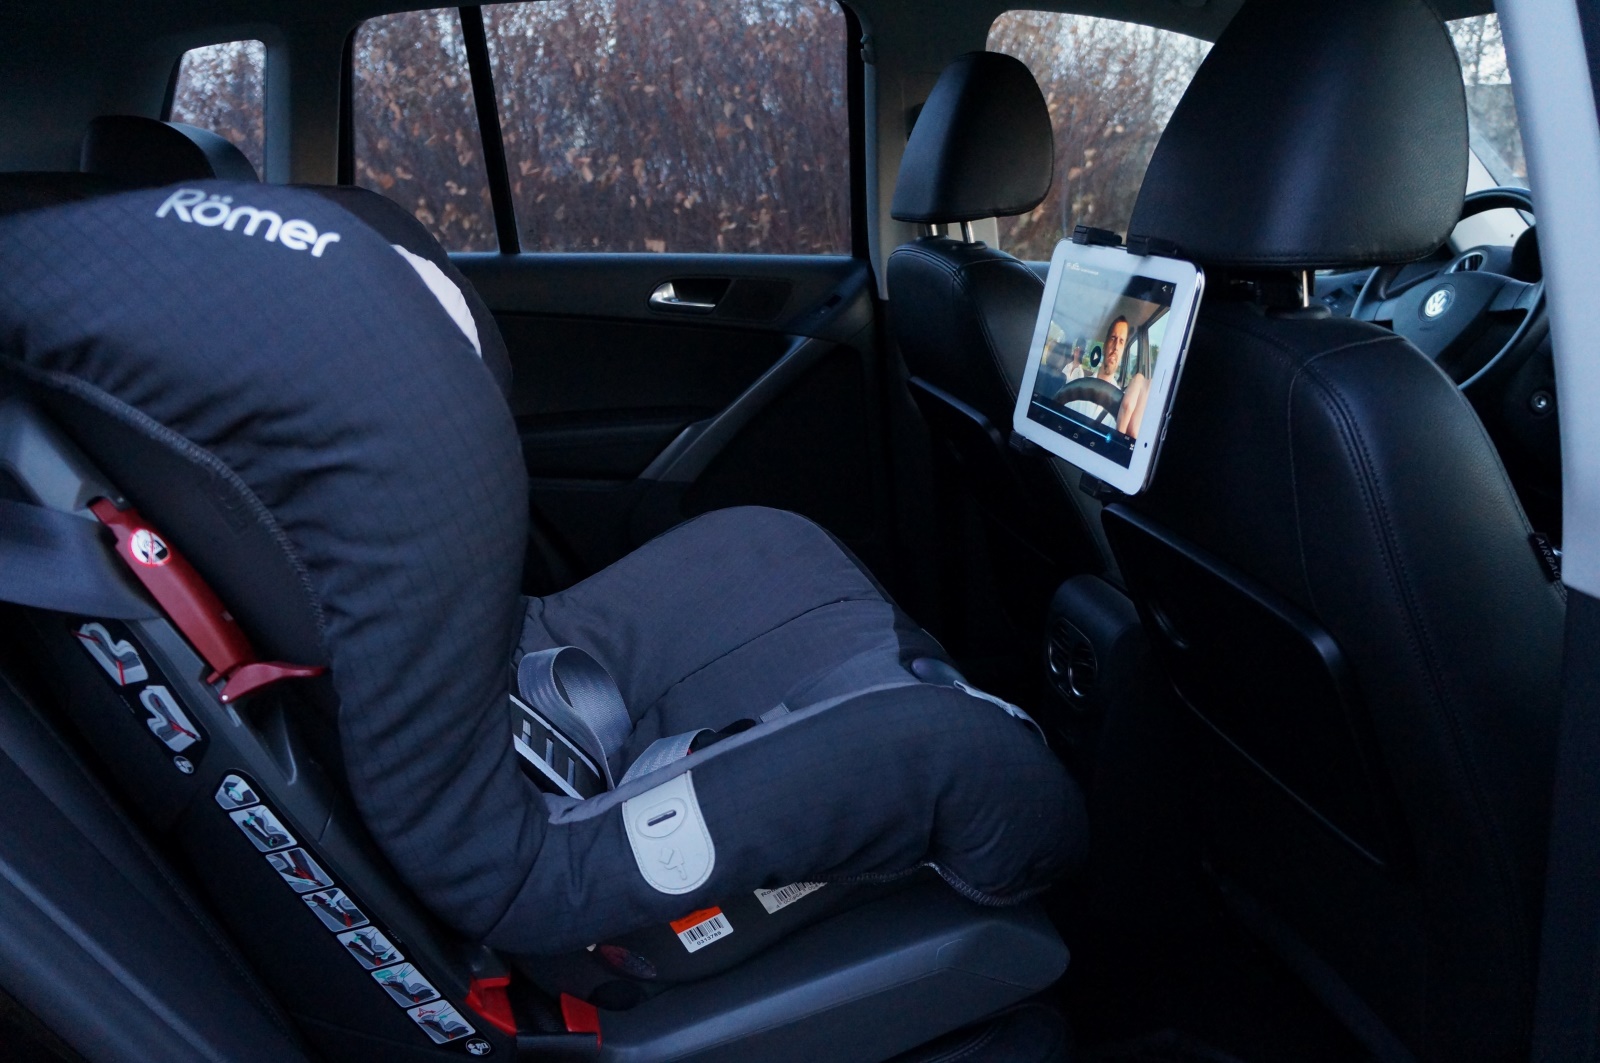 Купить Держатель для планшета в машину на подголовник, Киев